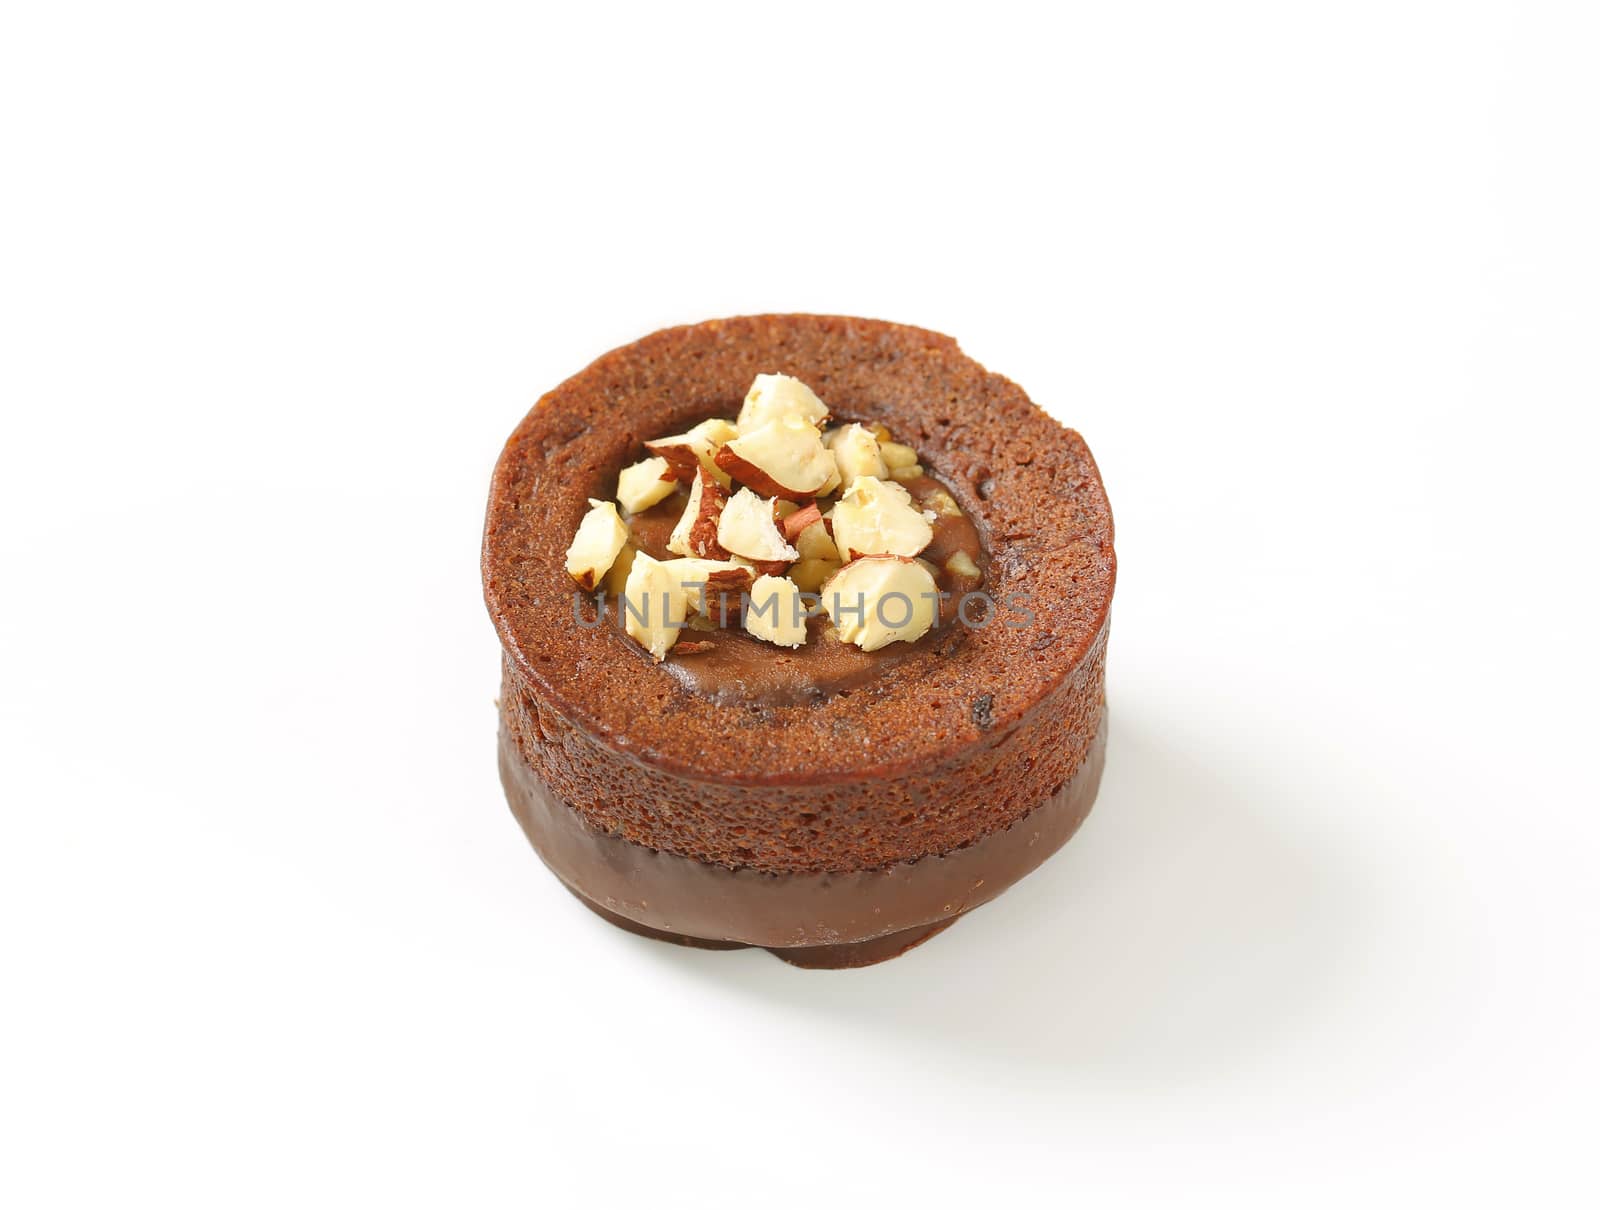 Mini chocolate hazelnut cake by Digifoodstock